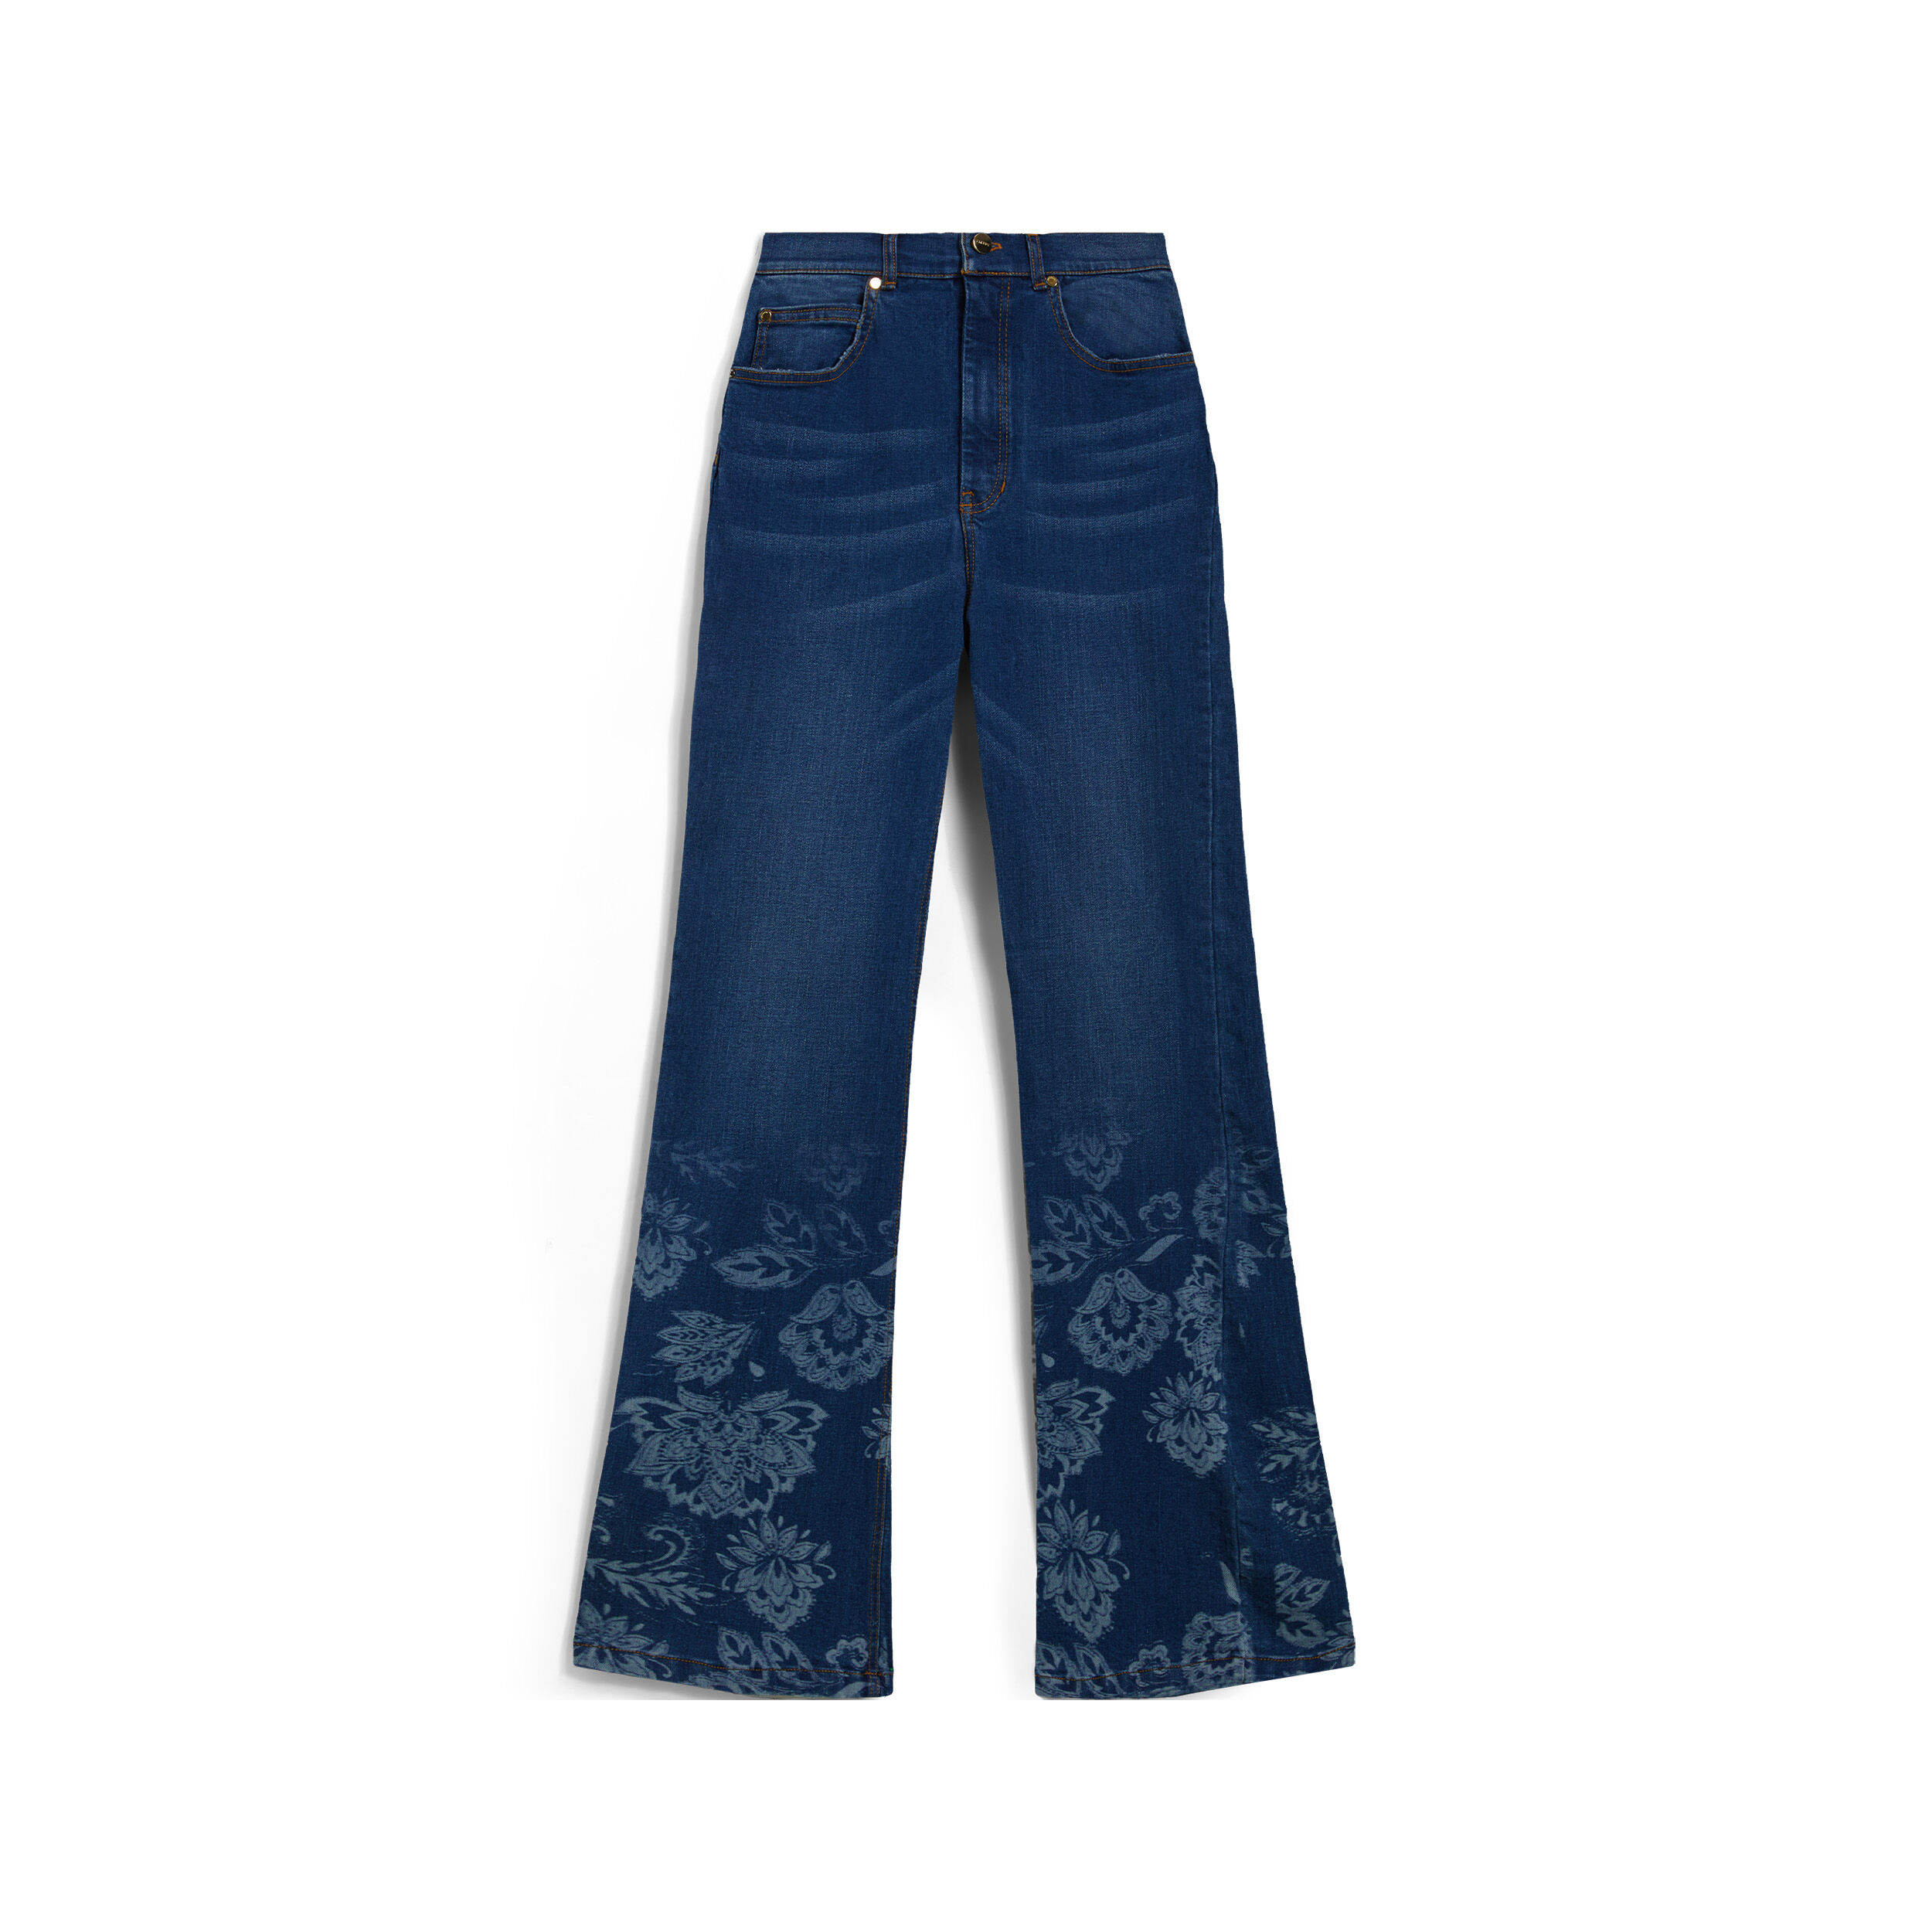 Freddy Jeans vita alta flondo a zampa decorato da grafica floreale Denim Blu Medio-Tob. Seams Donna Extra Large